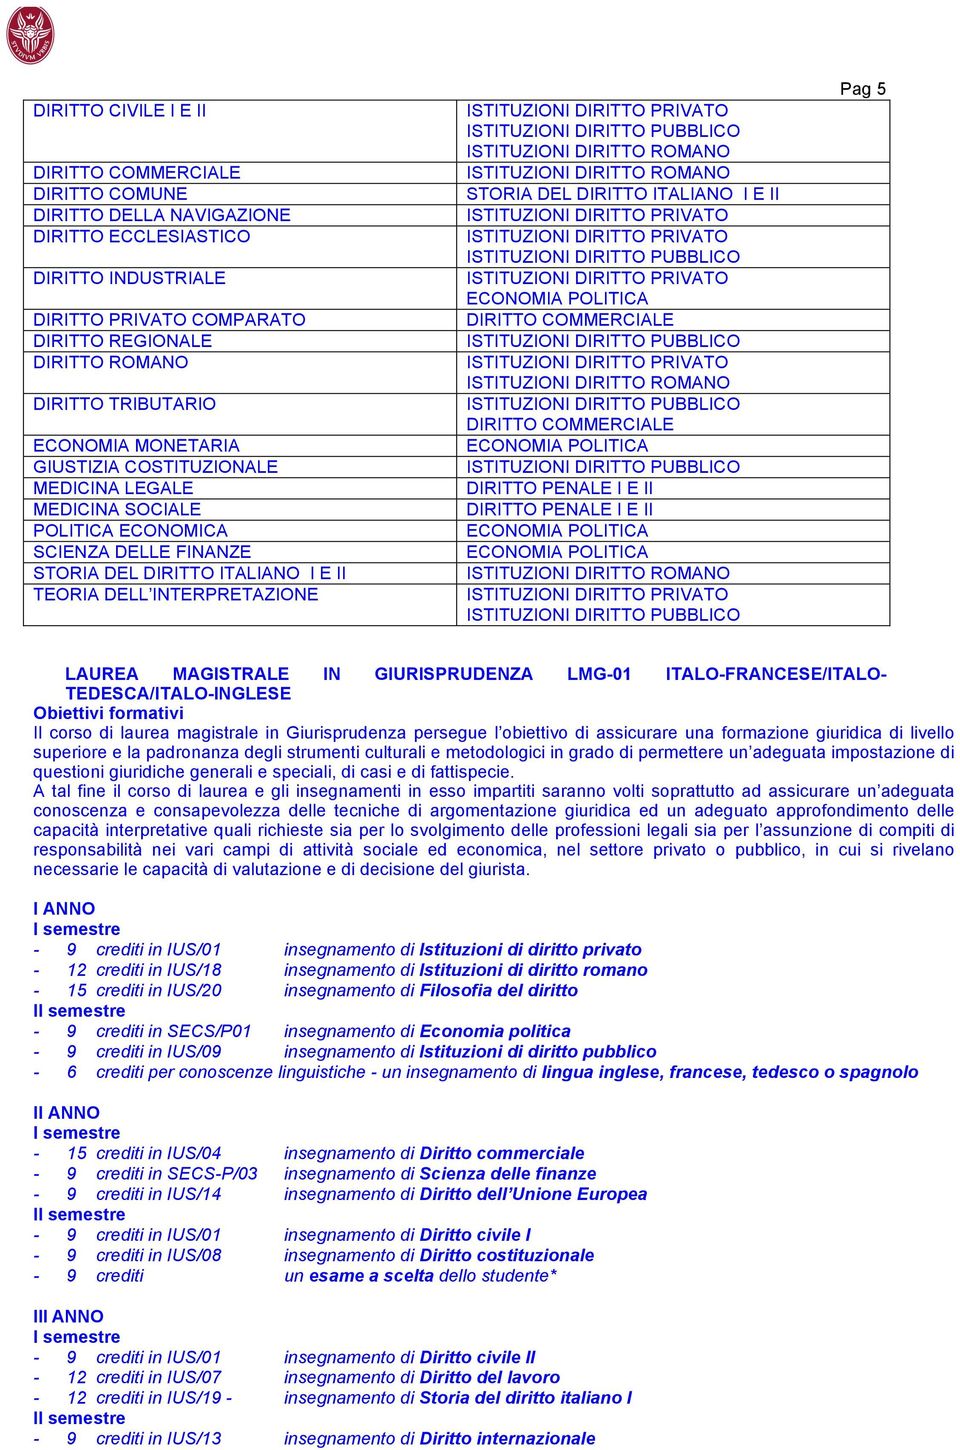 DEL DIRITTO ITALIANO I E II DIRITTO COMMERCIALE DIRITTO COMMERCIALE DIRITTO PENALE I E II DIRITTO PENALE I E II Pag 5 LAUREA MAGISTRALE IN GIURISPRUDENZA LMG-01 ITALO-FRANCESE/ITALO-